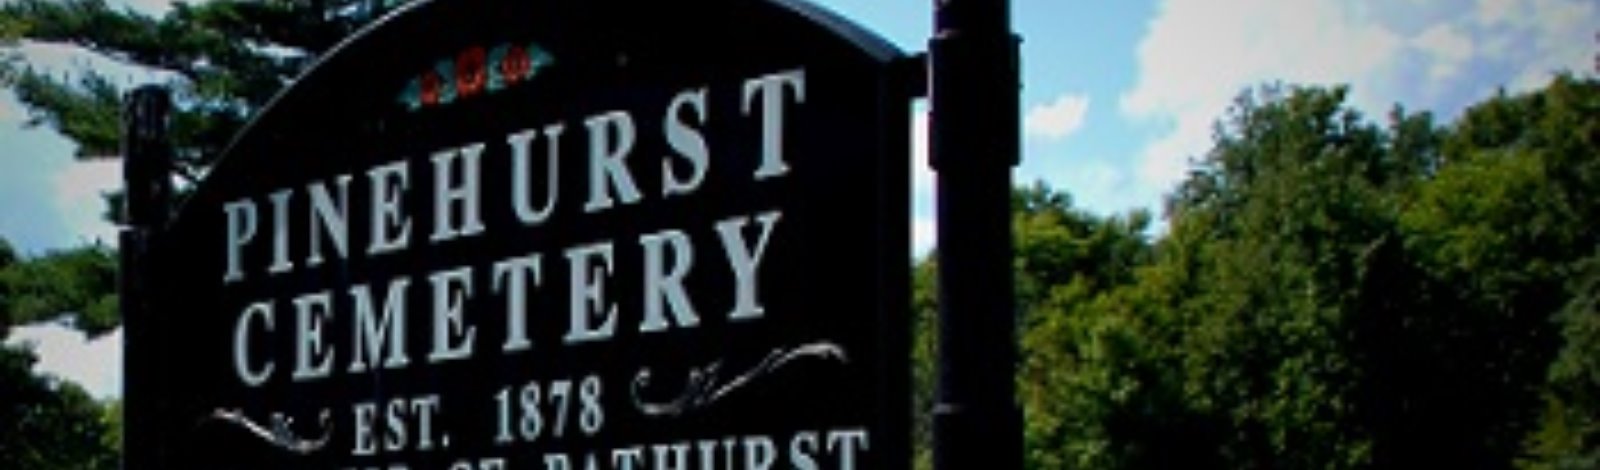 Pinehurst Cemetery sign